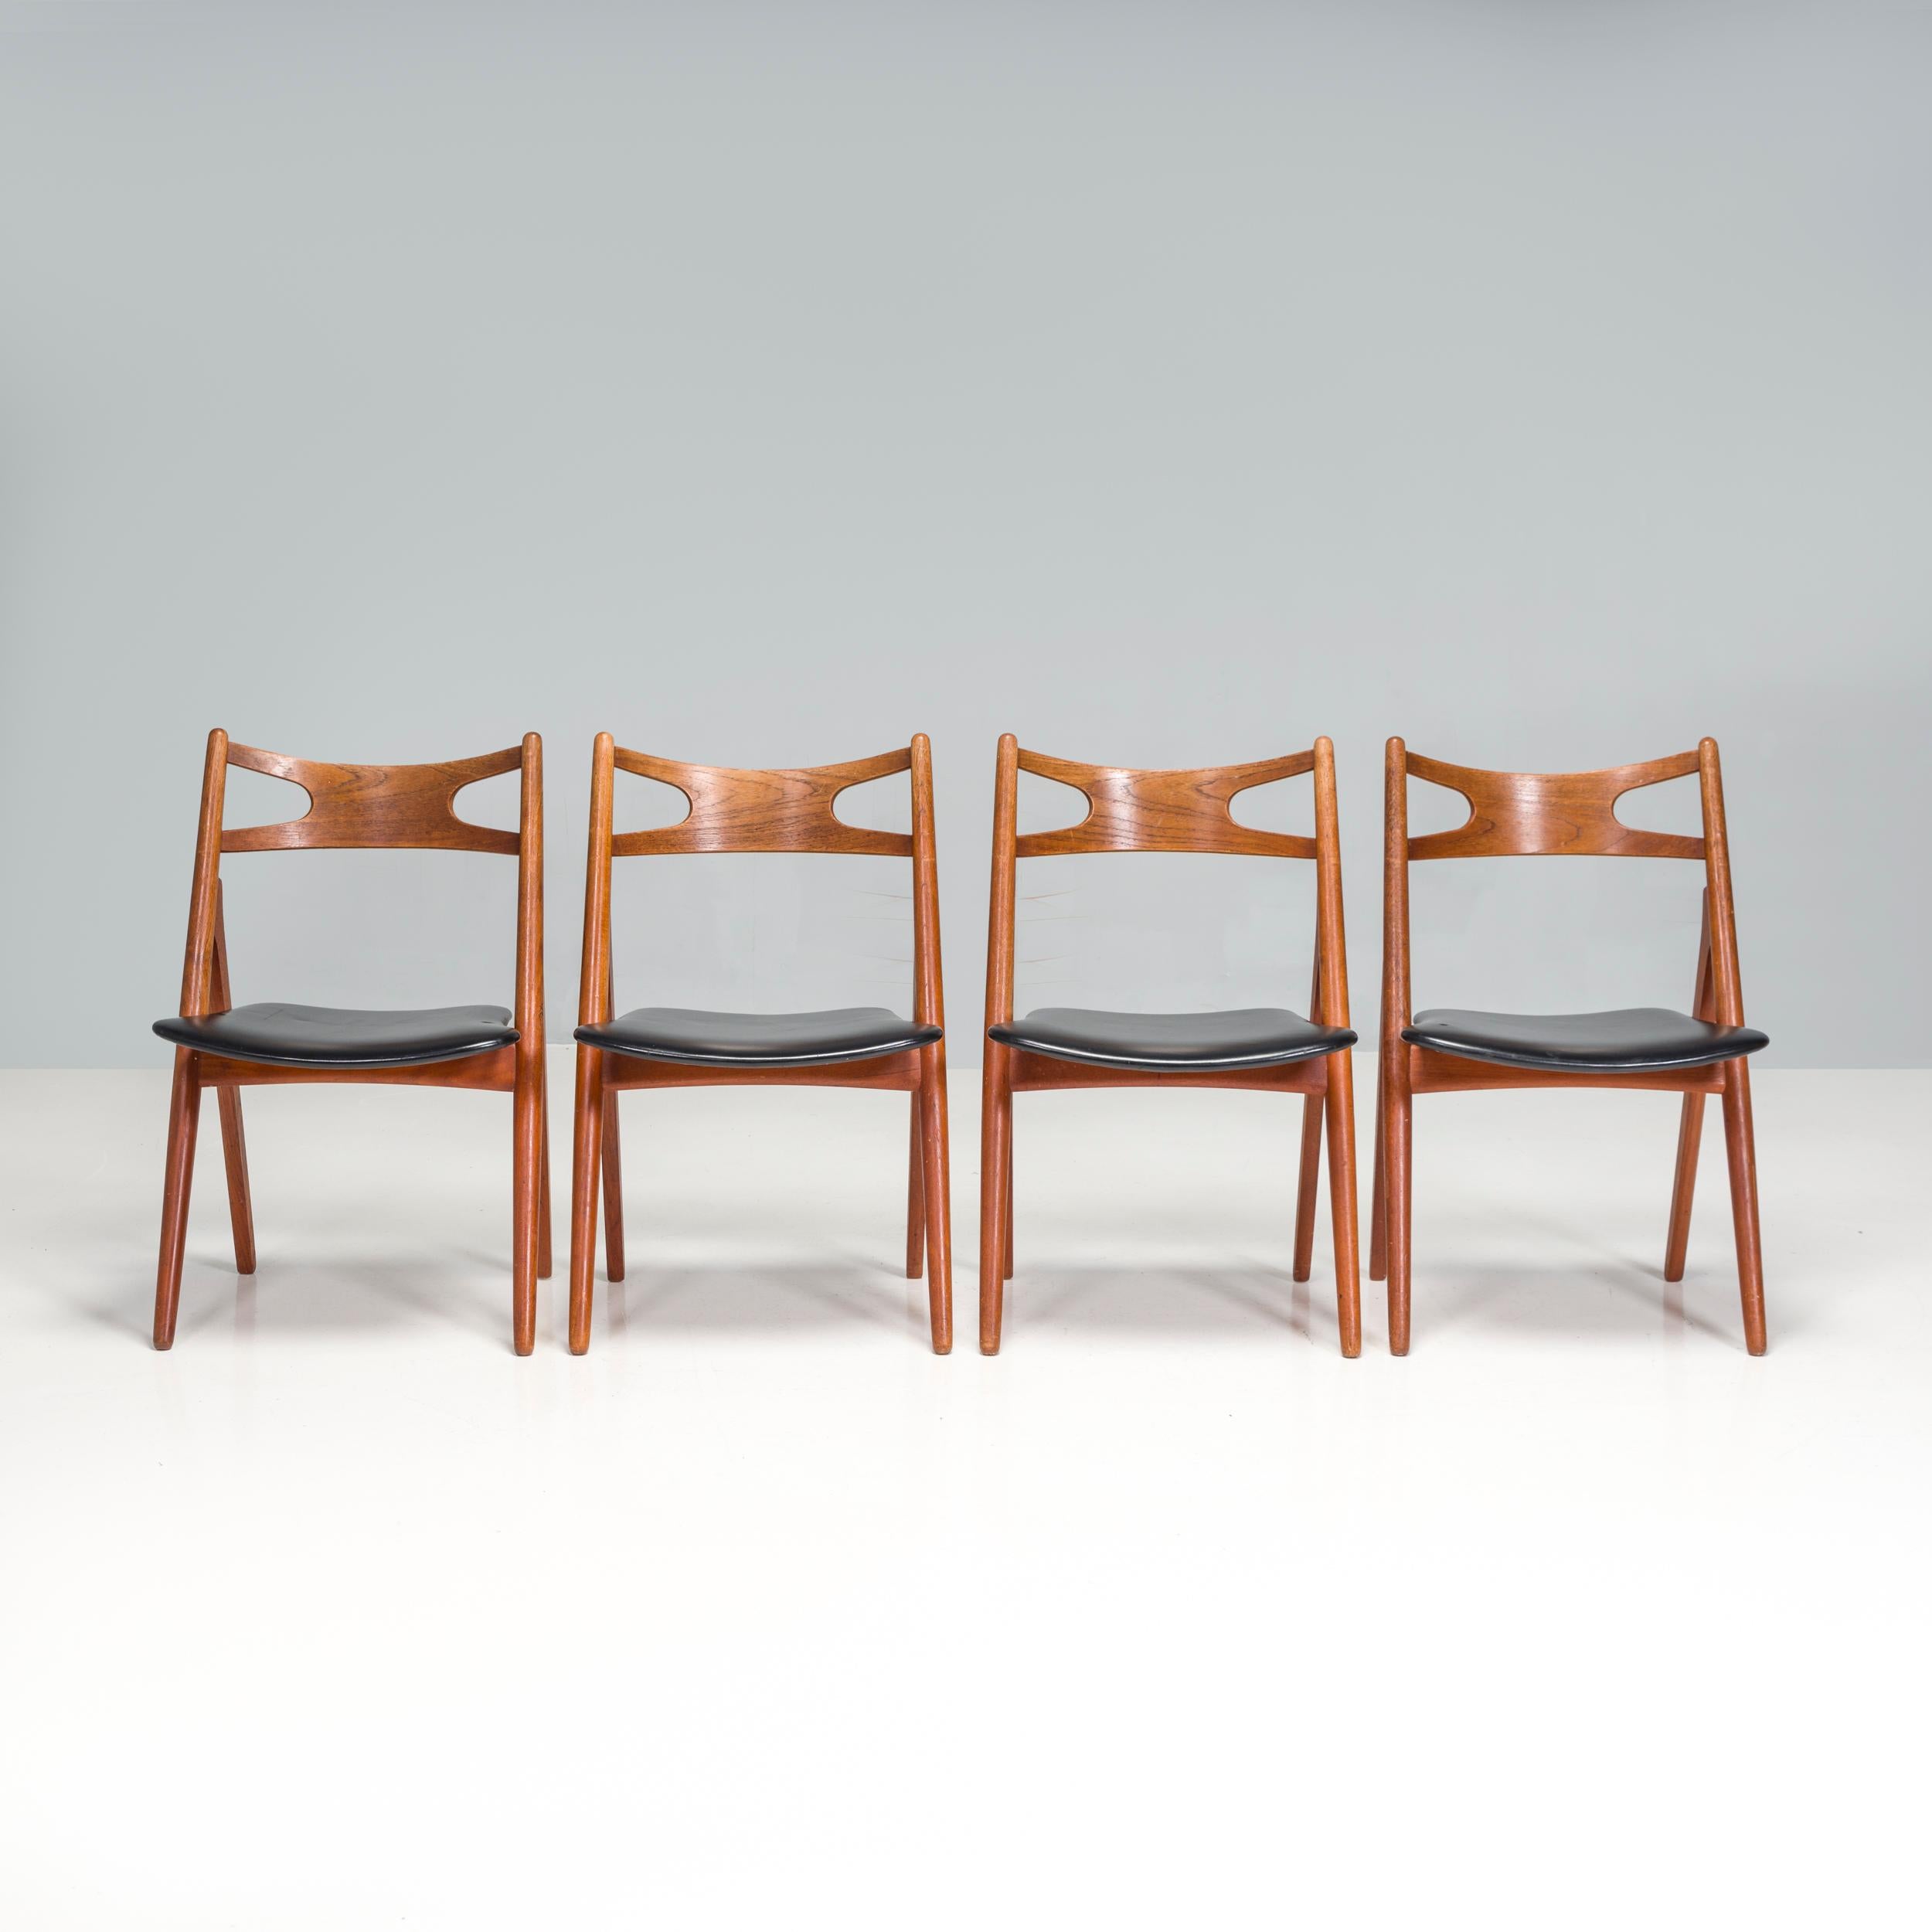 Der 1952 von Hans J. Wegner entworfene CH29P Sawbuck Chair wurde bis in die 1970er Jahre von Carl Hansen & Son hergestellt und 20 Jahre später wieder neu aufgelegt.

Inspiriert von den Sägeböcken und Sägepferden, die von Zimmerleuten verwendet